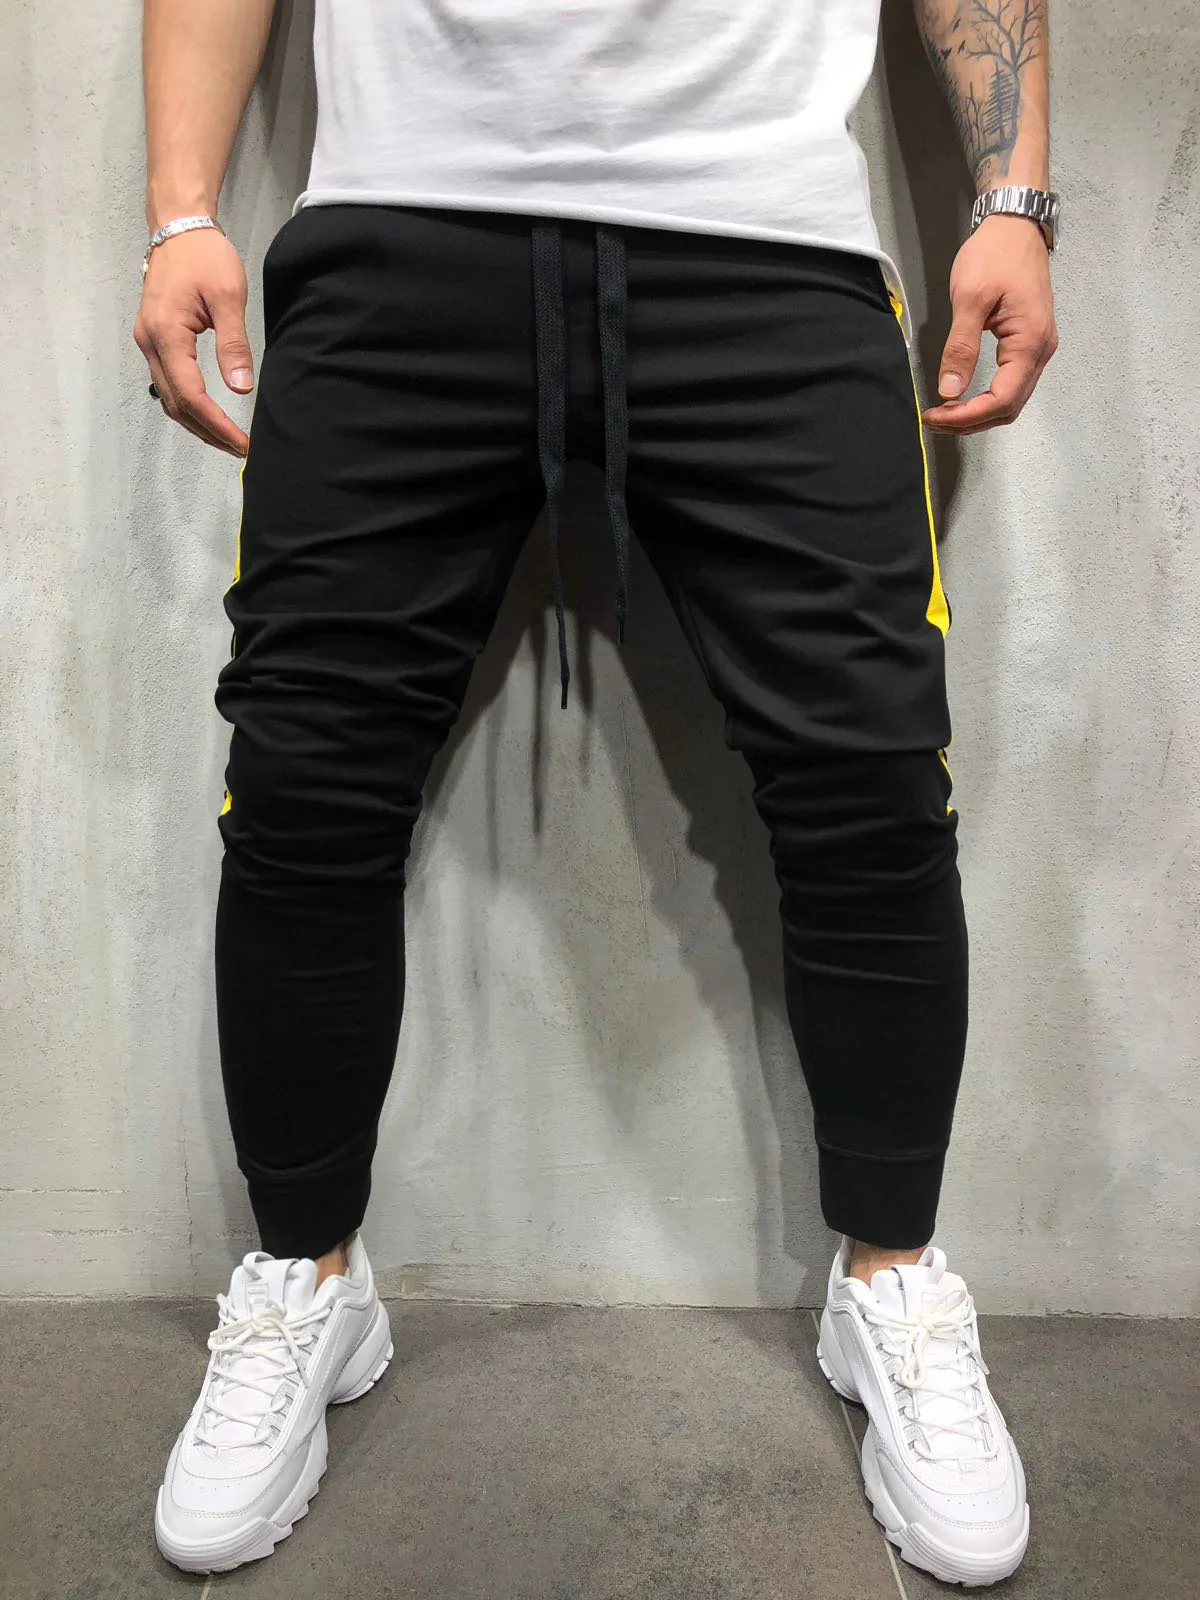 Pantalon Homme мужские спортивные штаны 2019 Новая мода хип-хоп фитнес уличные брюки полосатые штаны для бега на шнурке спортивные штаны